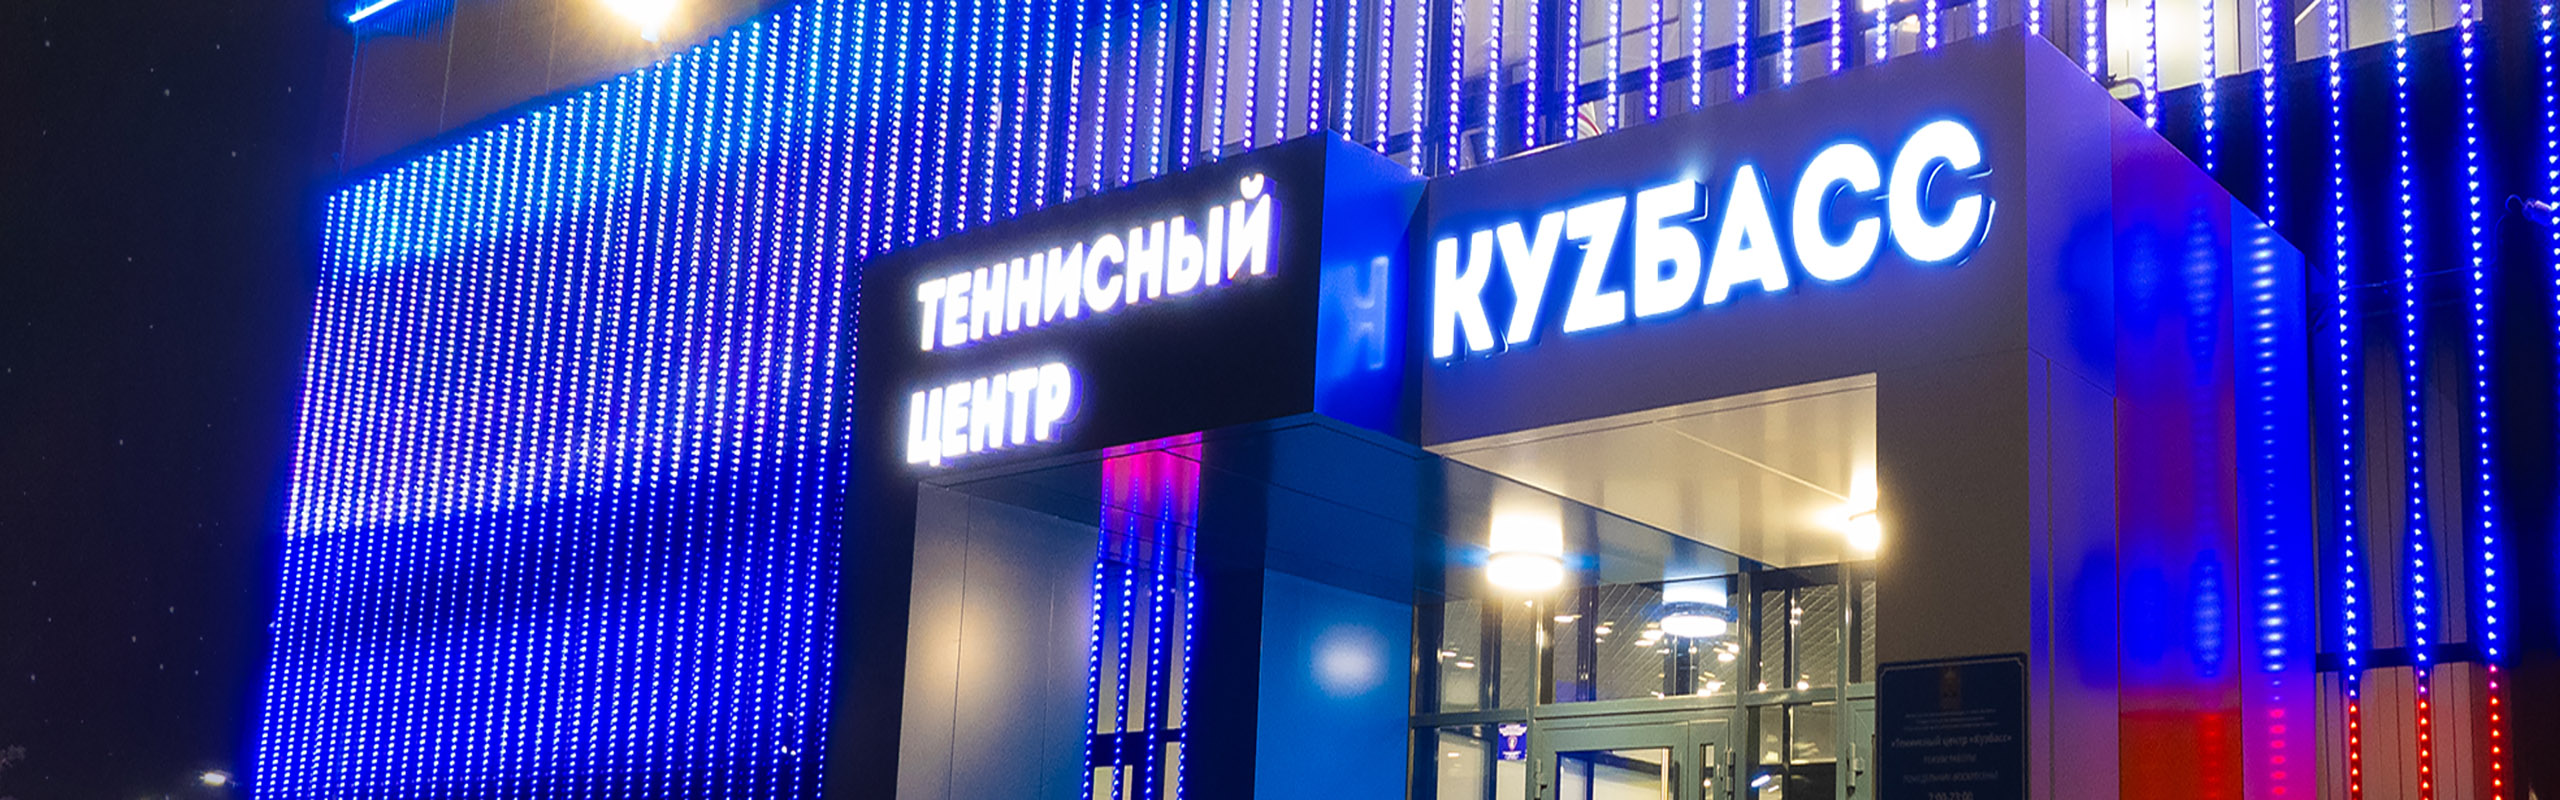 Архитектурное освещения теннисного центра Куzбасс